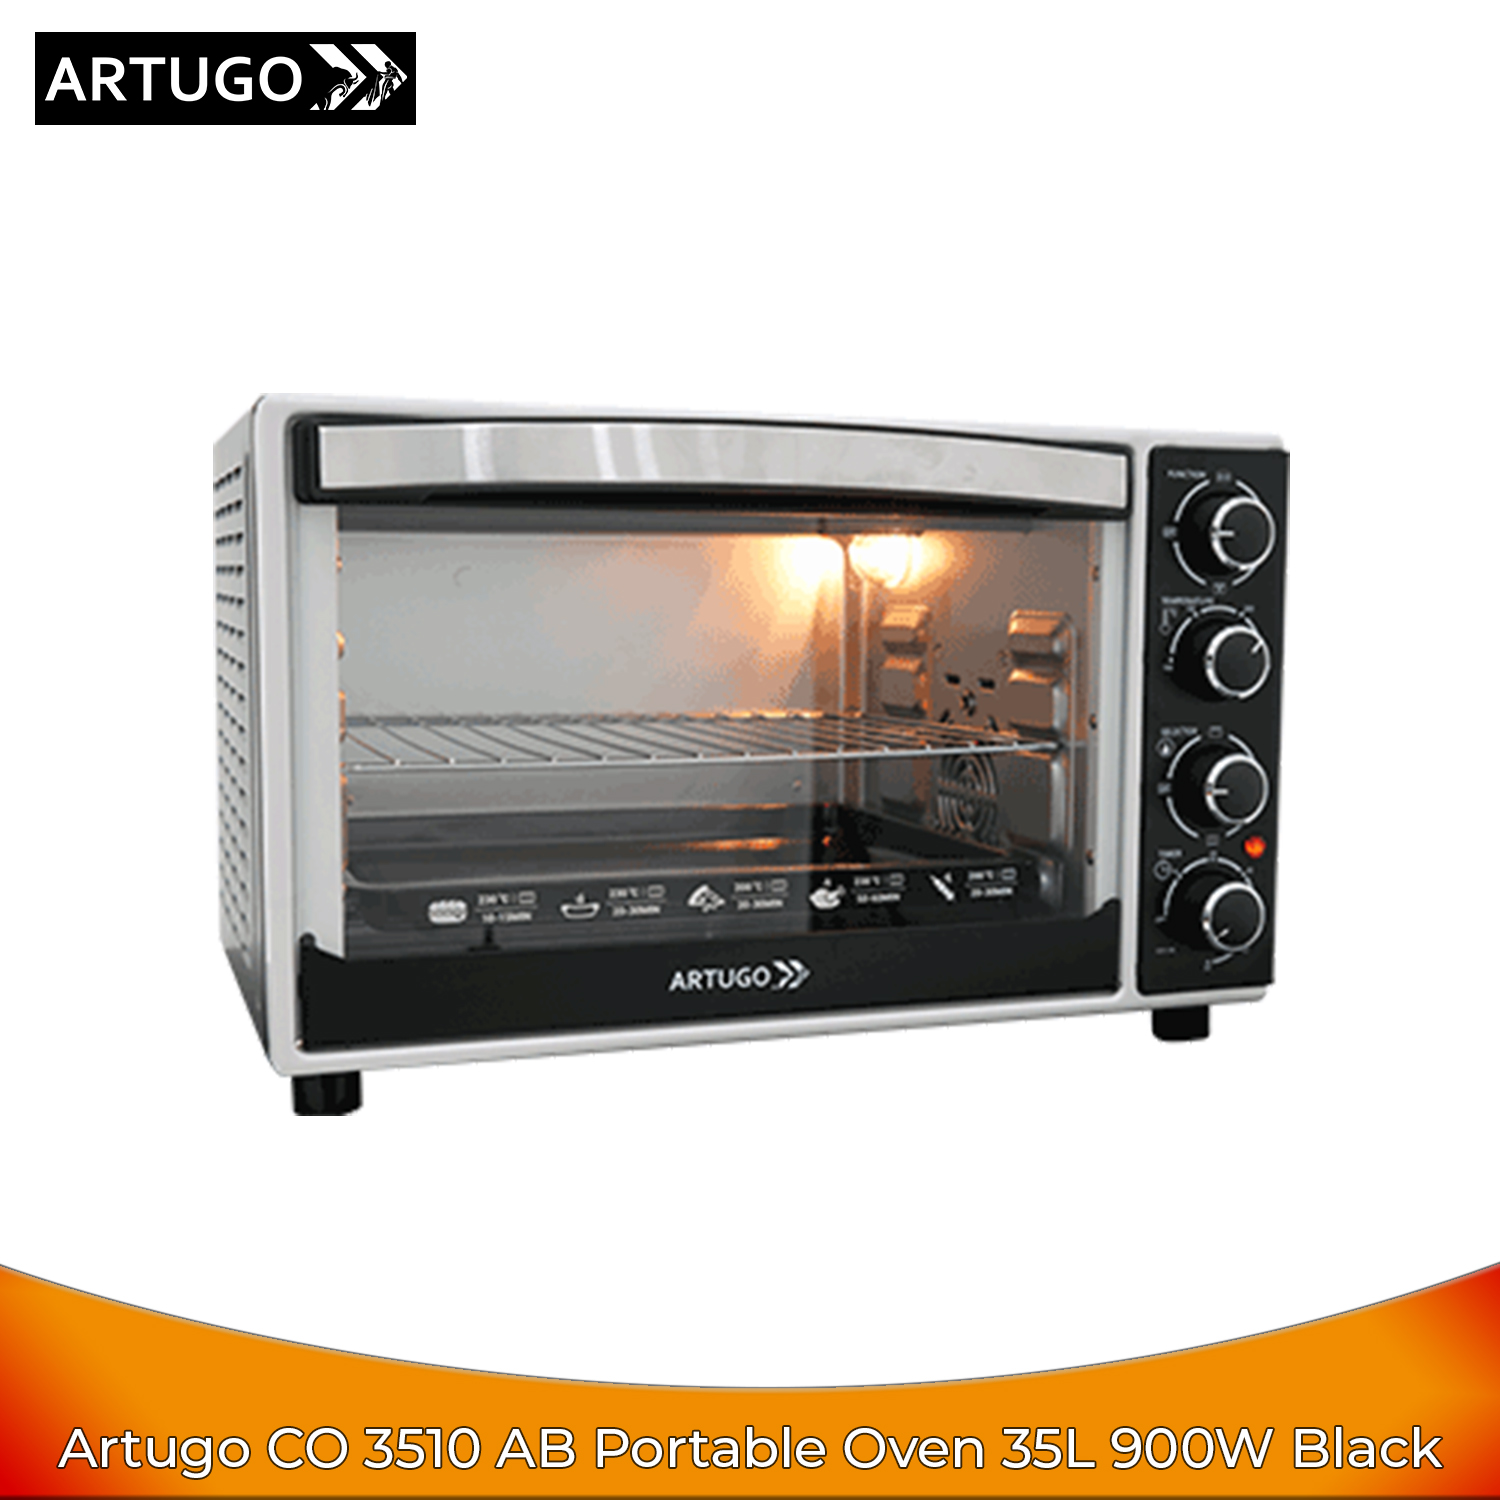 Artugo CO 3510 AB Portable 3 in 1 Oven Multifungsi 35L 